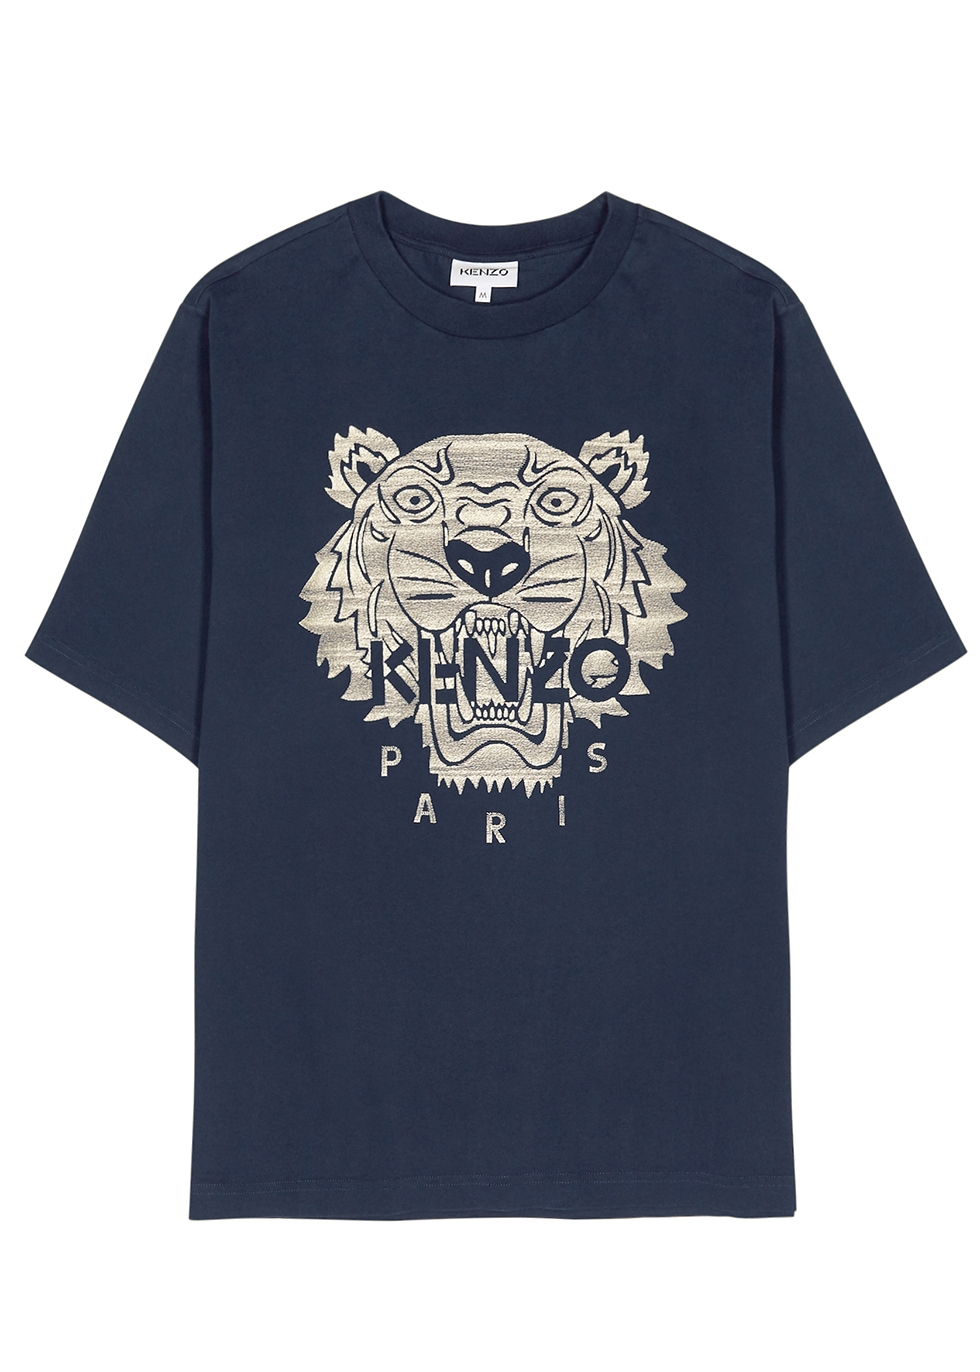 kenzo navy t shirt